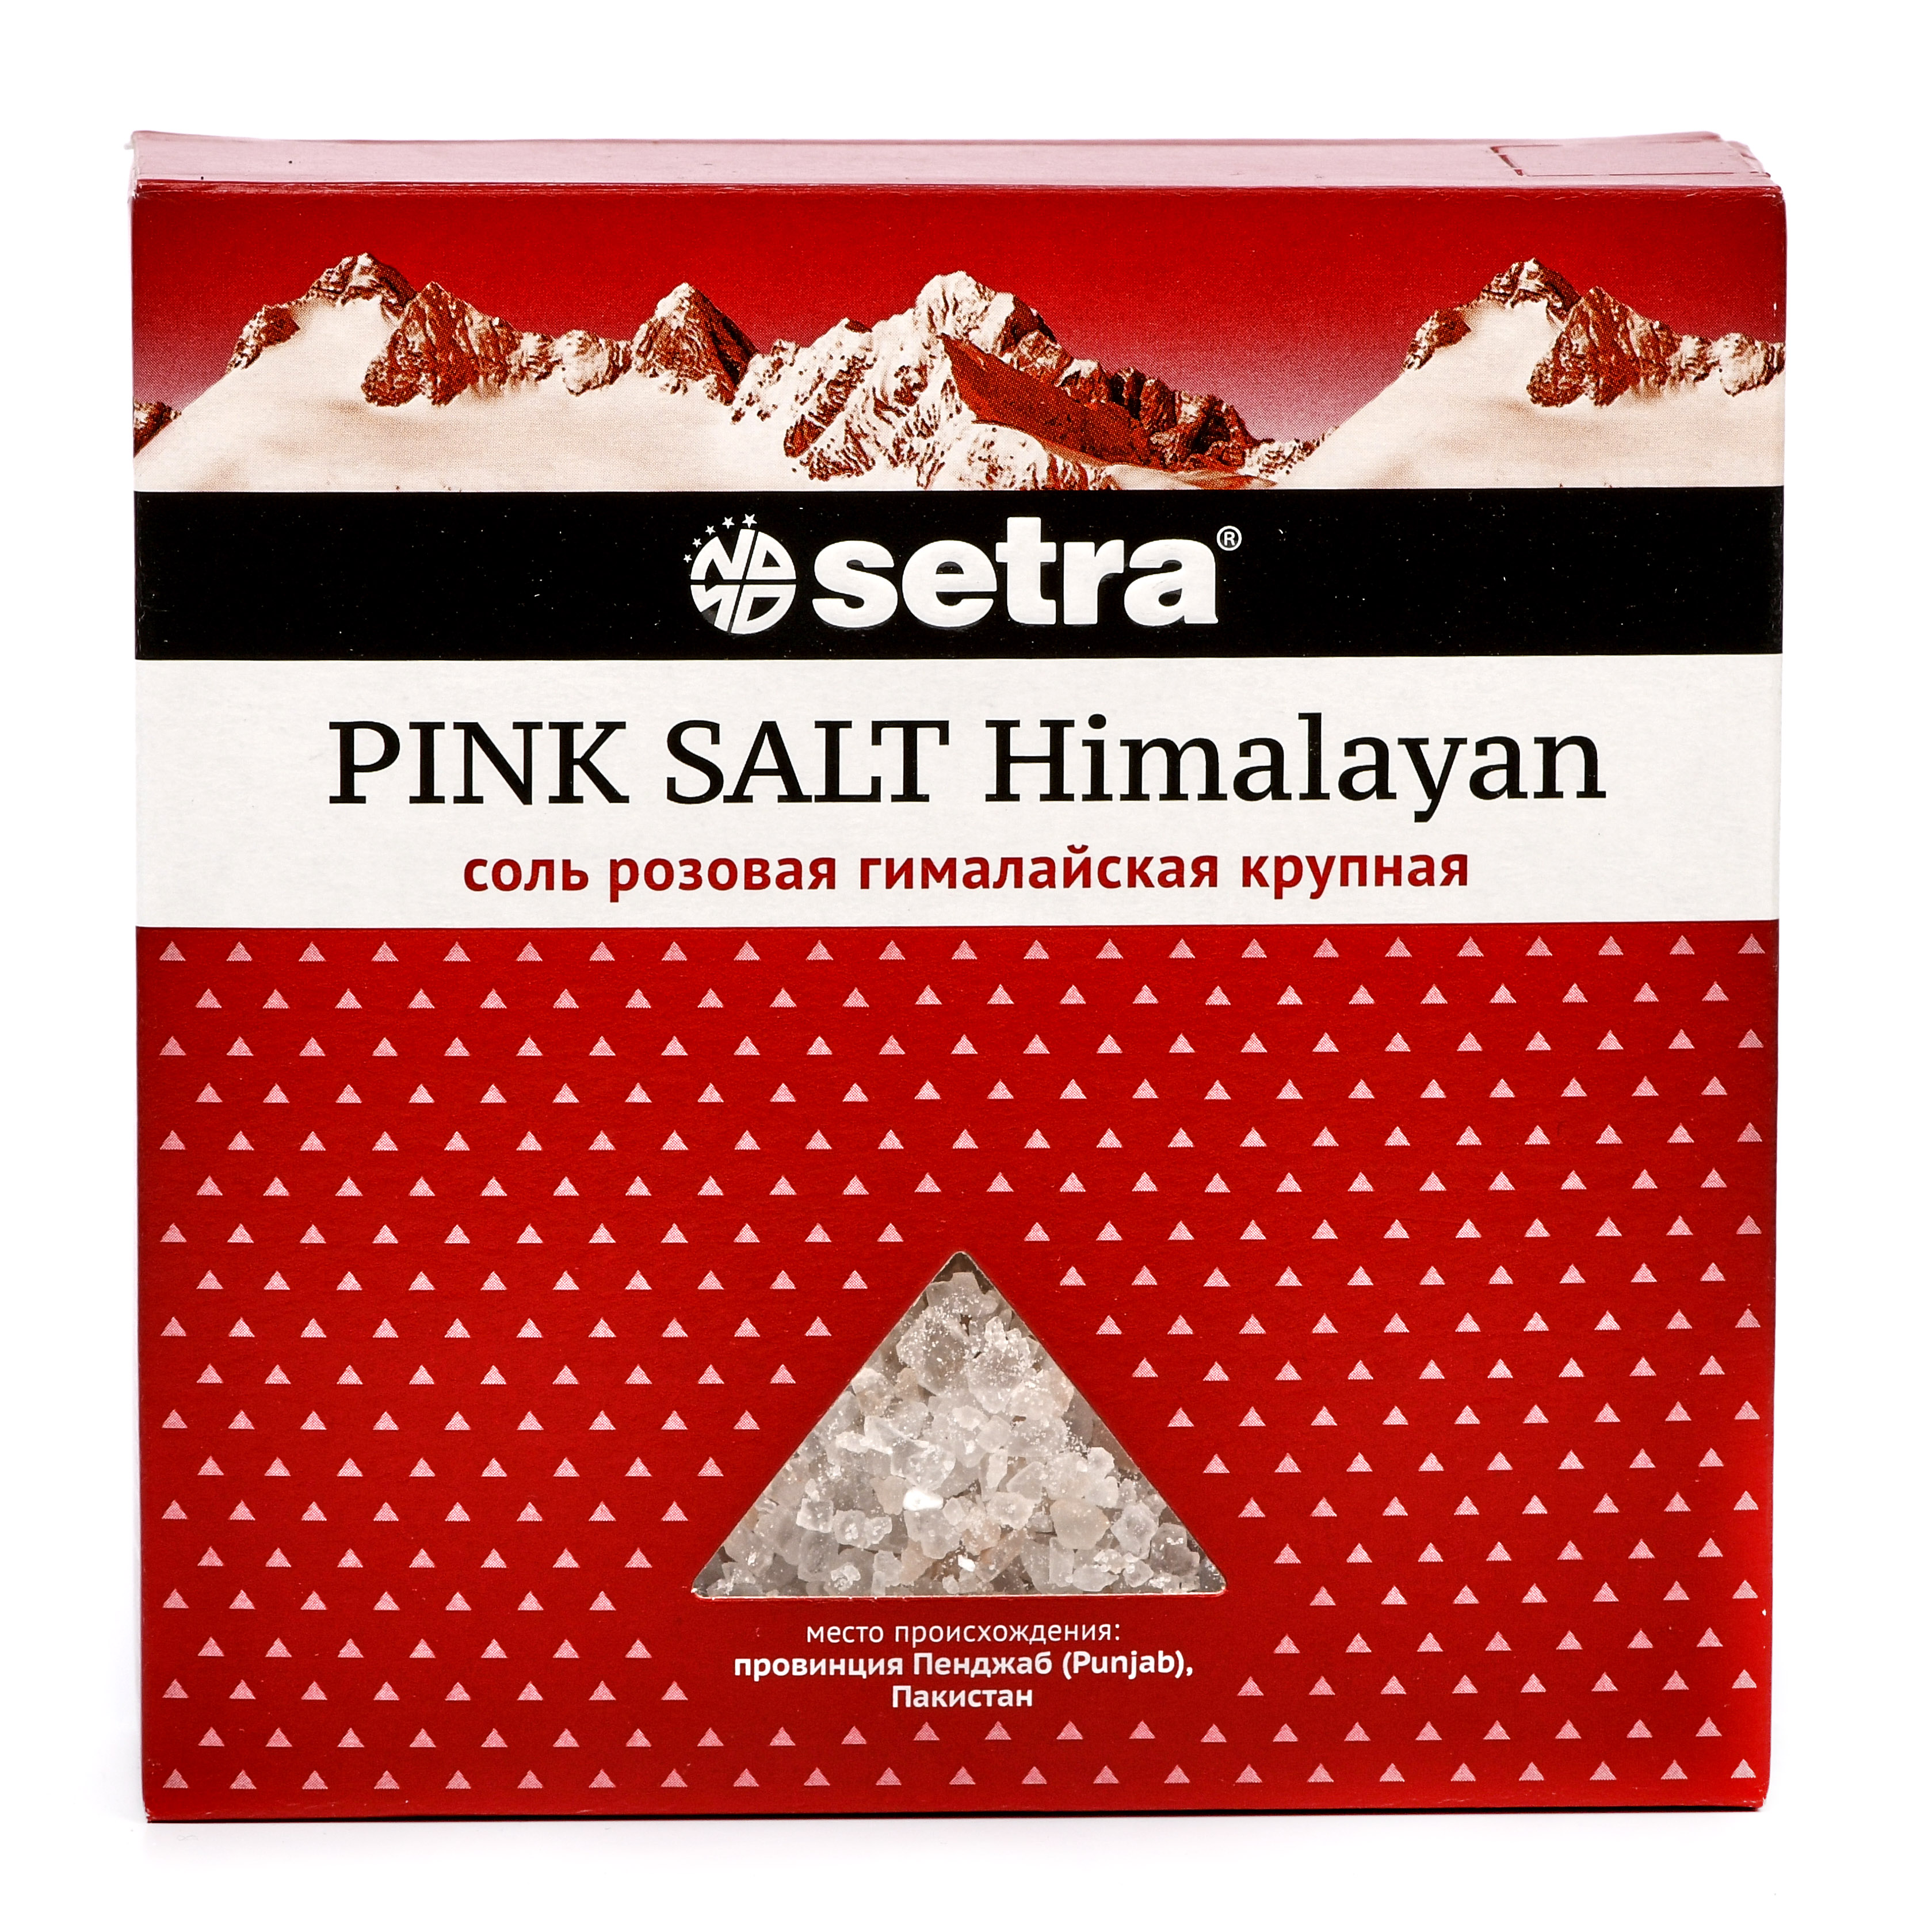 Соль розовая гималайская крупная, Setra - 500 г